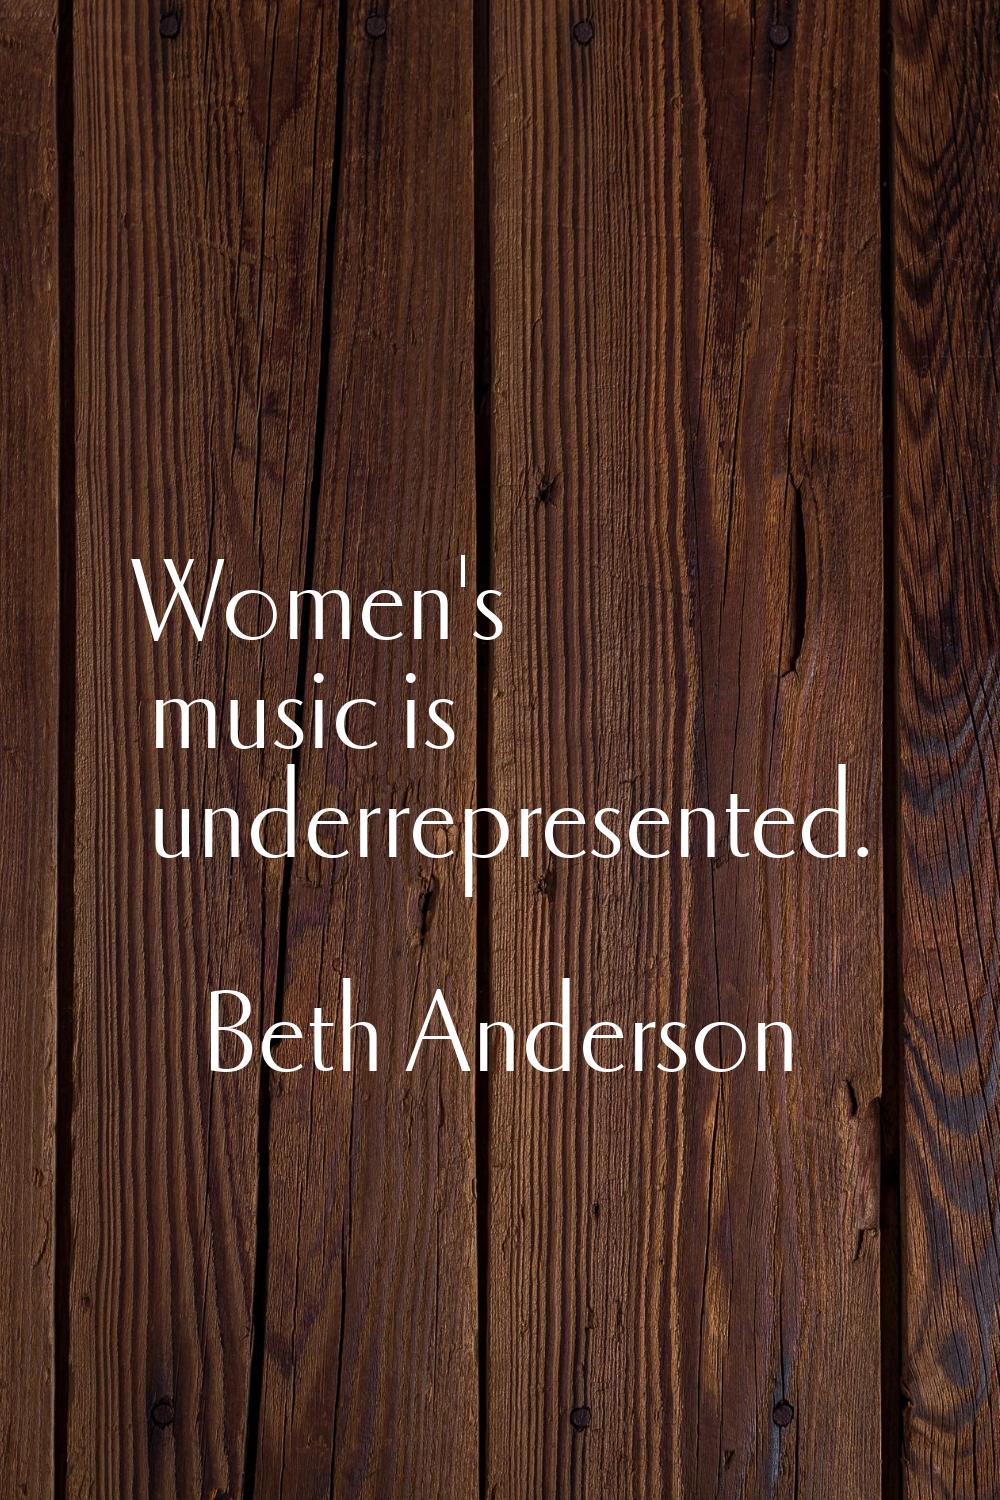 Women's music is underrepresented.